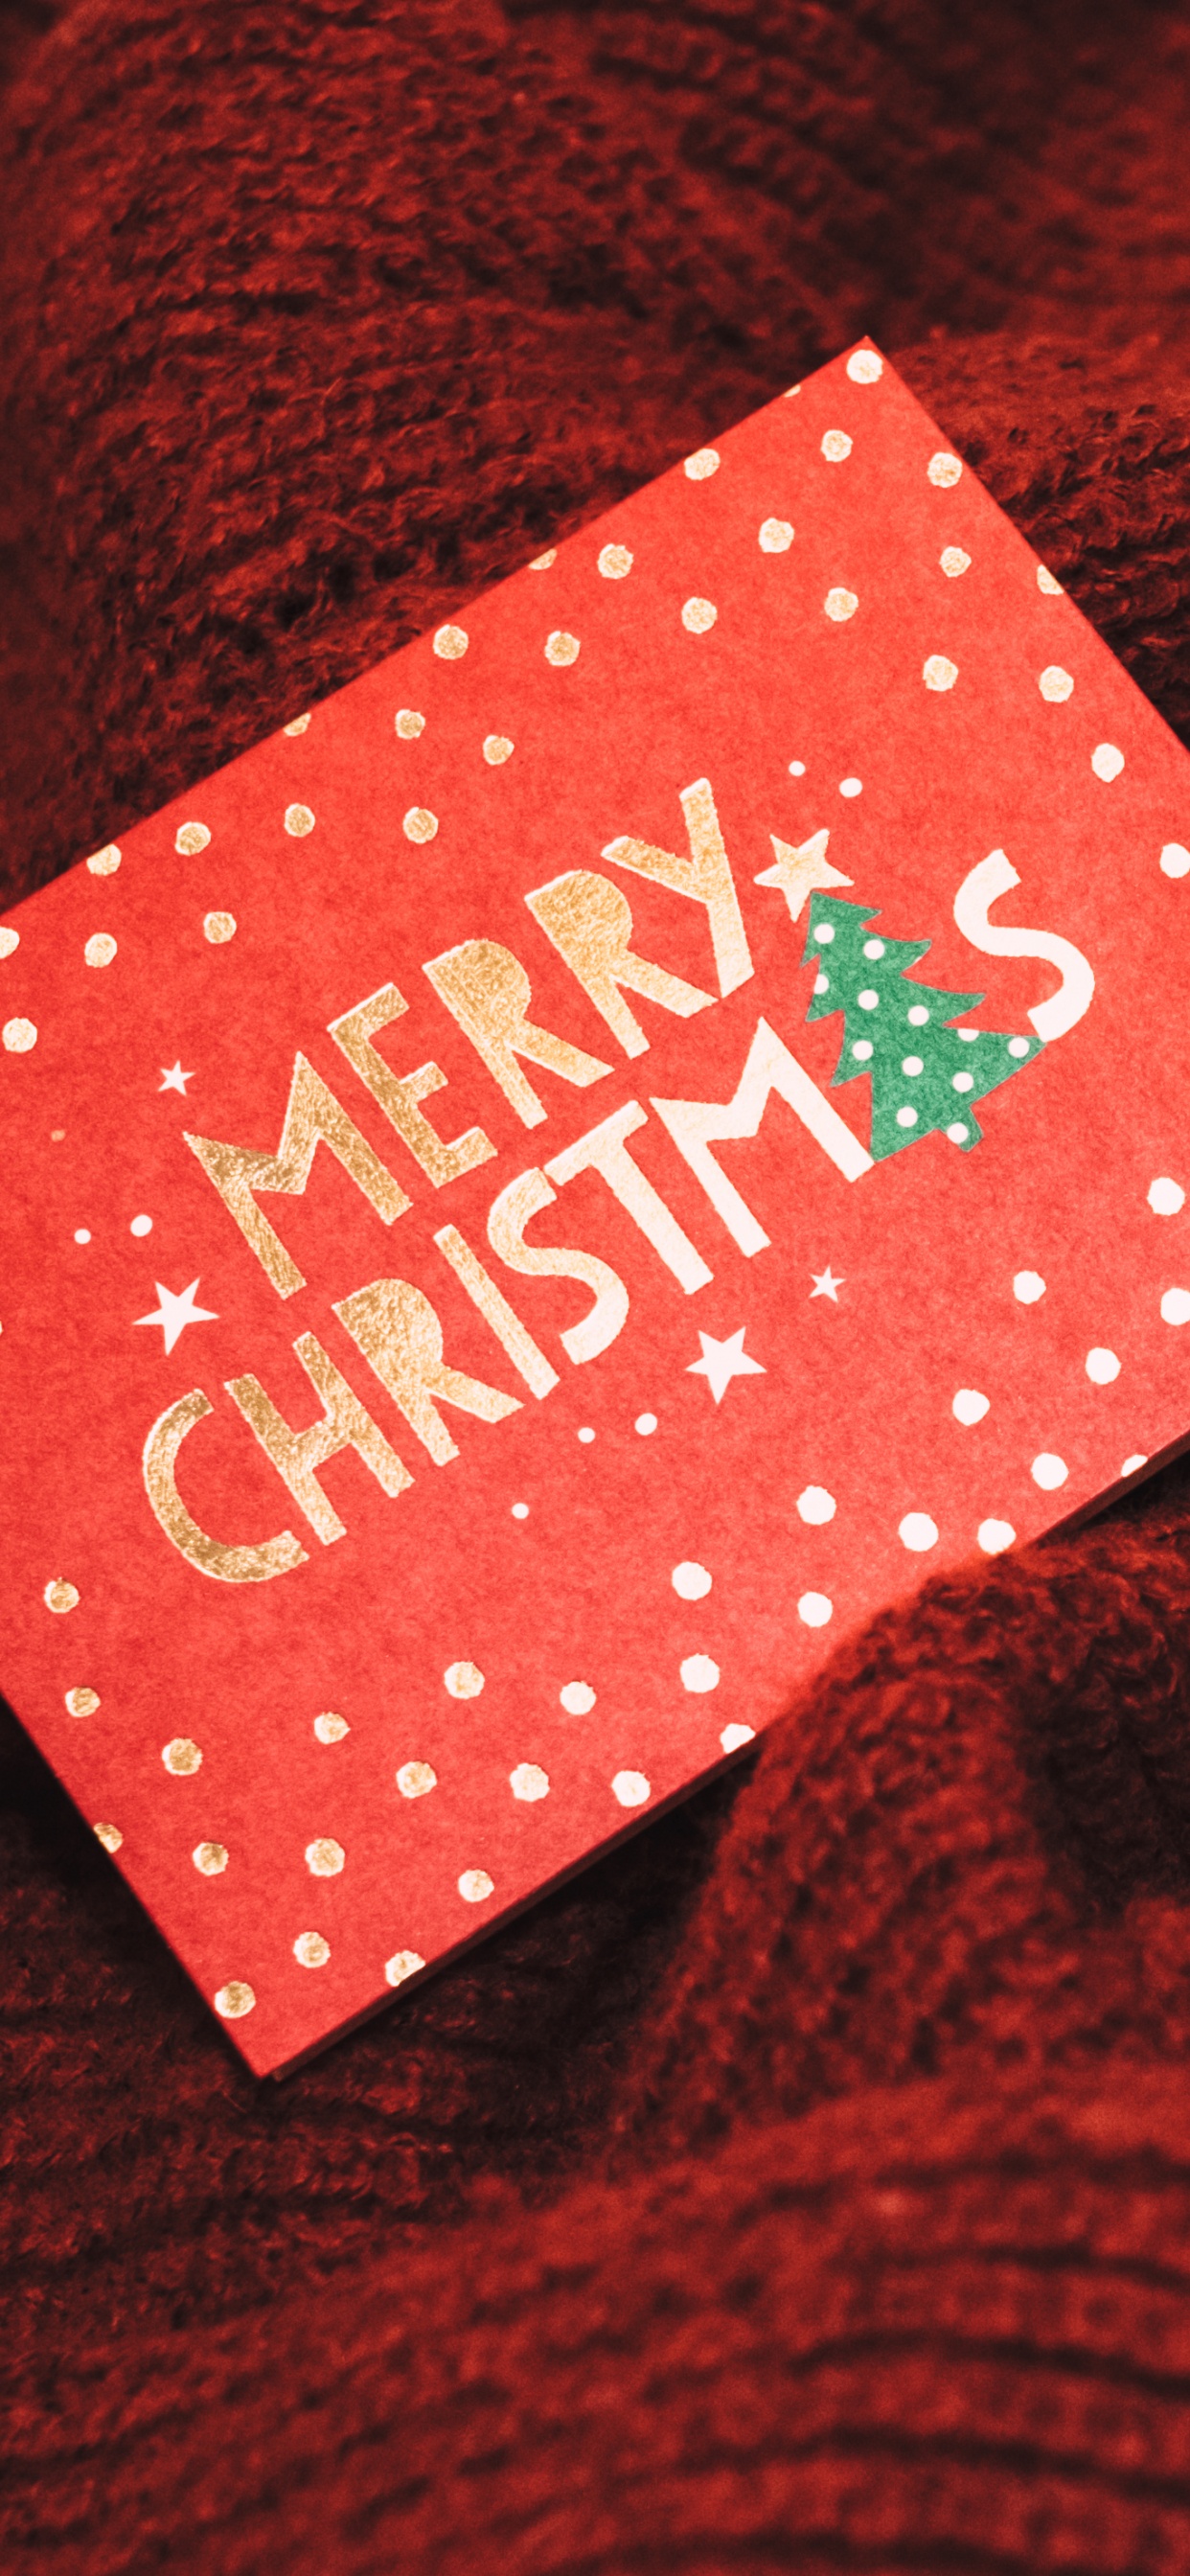 圣诞节那天, 圣诞老人, 圣诞卡片, 新的一年, 假日 壁纸 1242x2688 允许